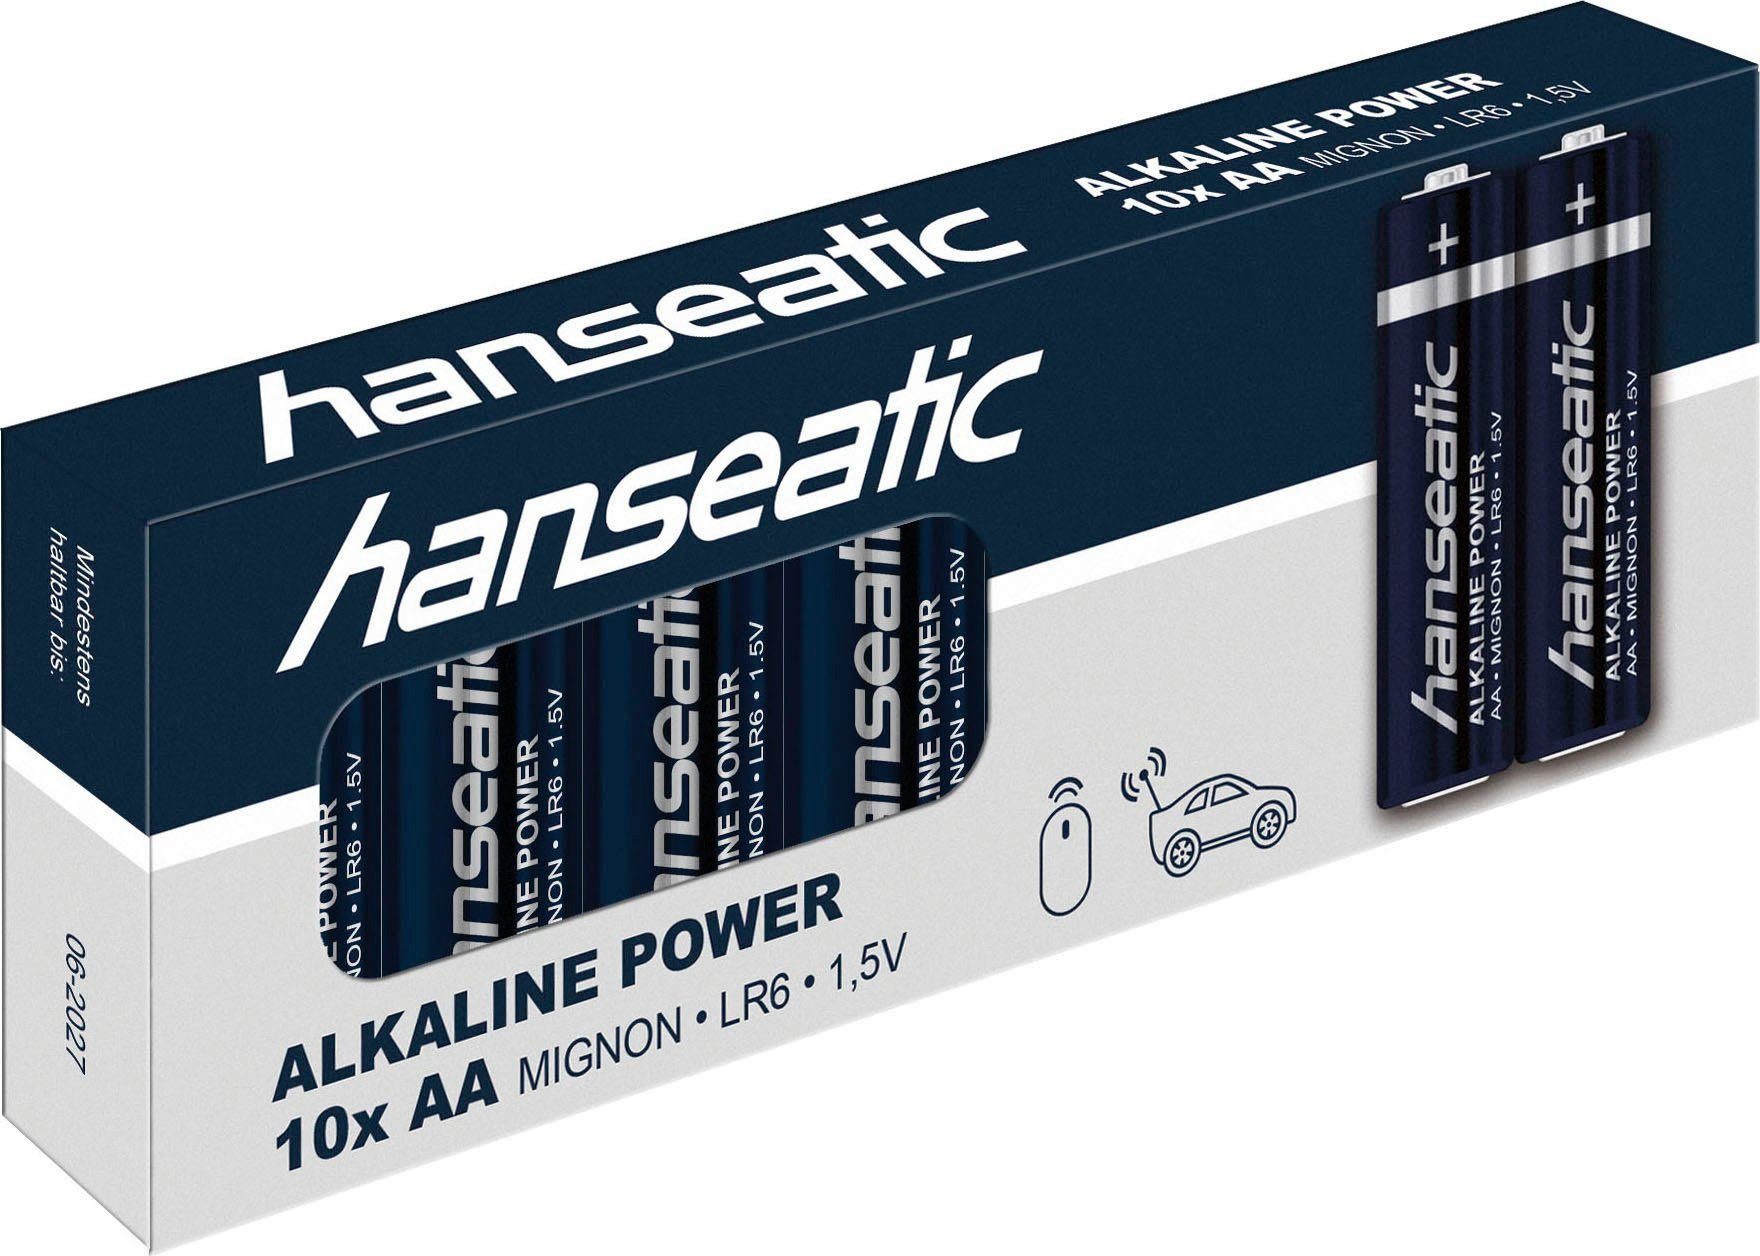 10x Batterie CR + Hanseatic Stück + 5x Batterie, St), Set AAA 2032 10x 25 Mix (25 AA